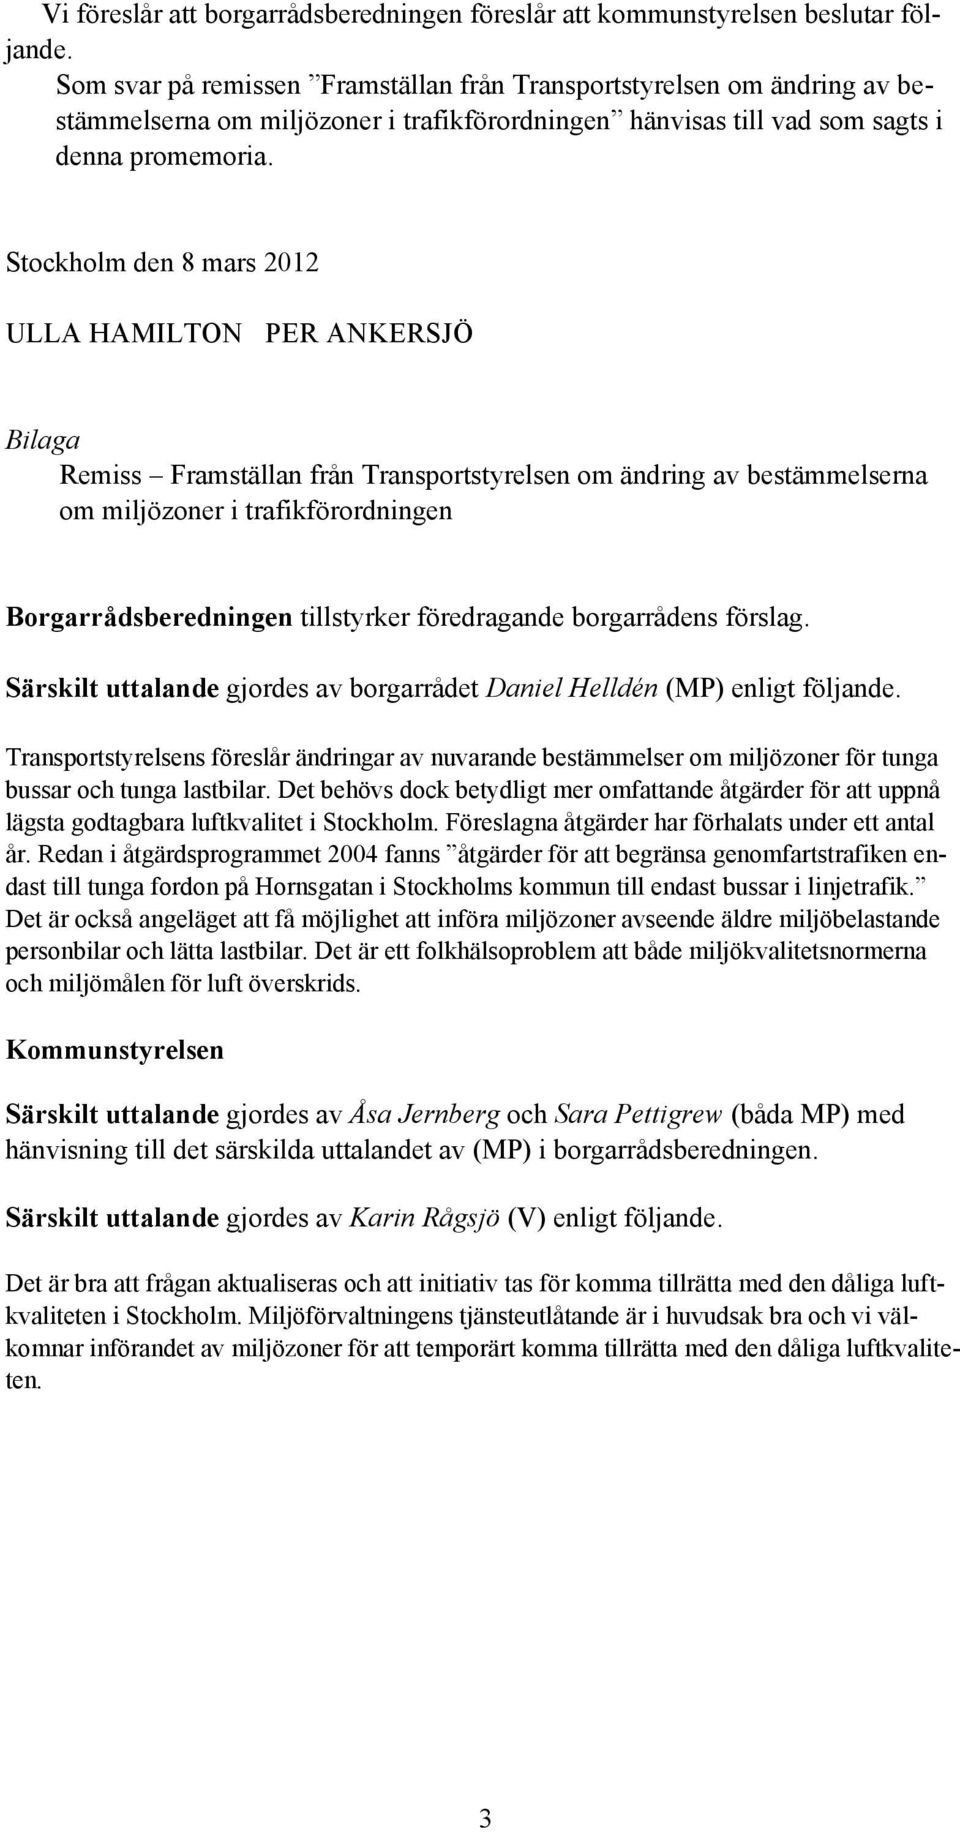 Stockholm den 8 mars 2012 ULLA HAMILTON PER ANKERSJÖ Bilaga Remiss Framställan från Transportstyrelsen om ändring av bestämmelserna om miljözoner i trafikförordningen Borgarrådsberedningen